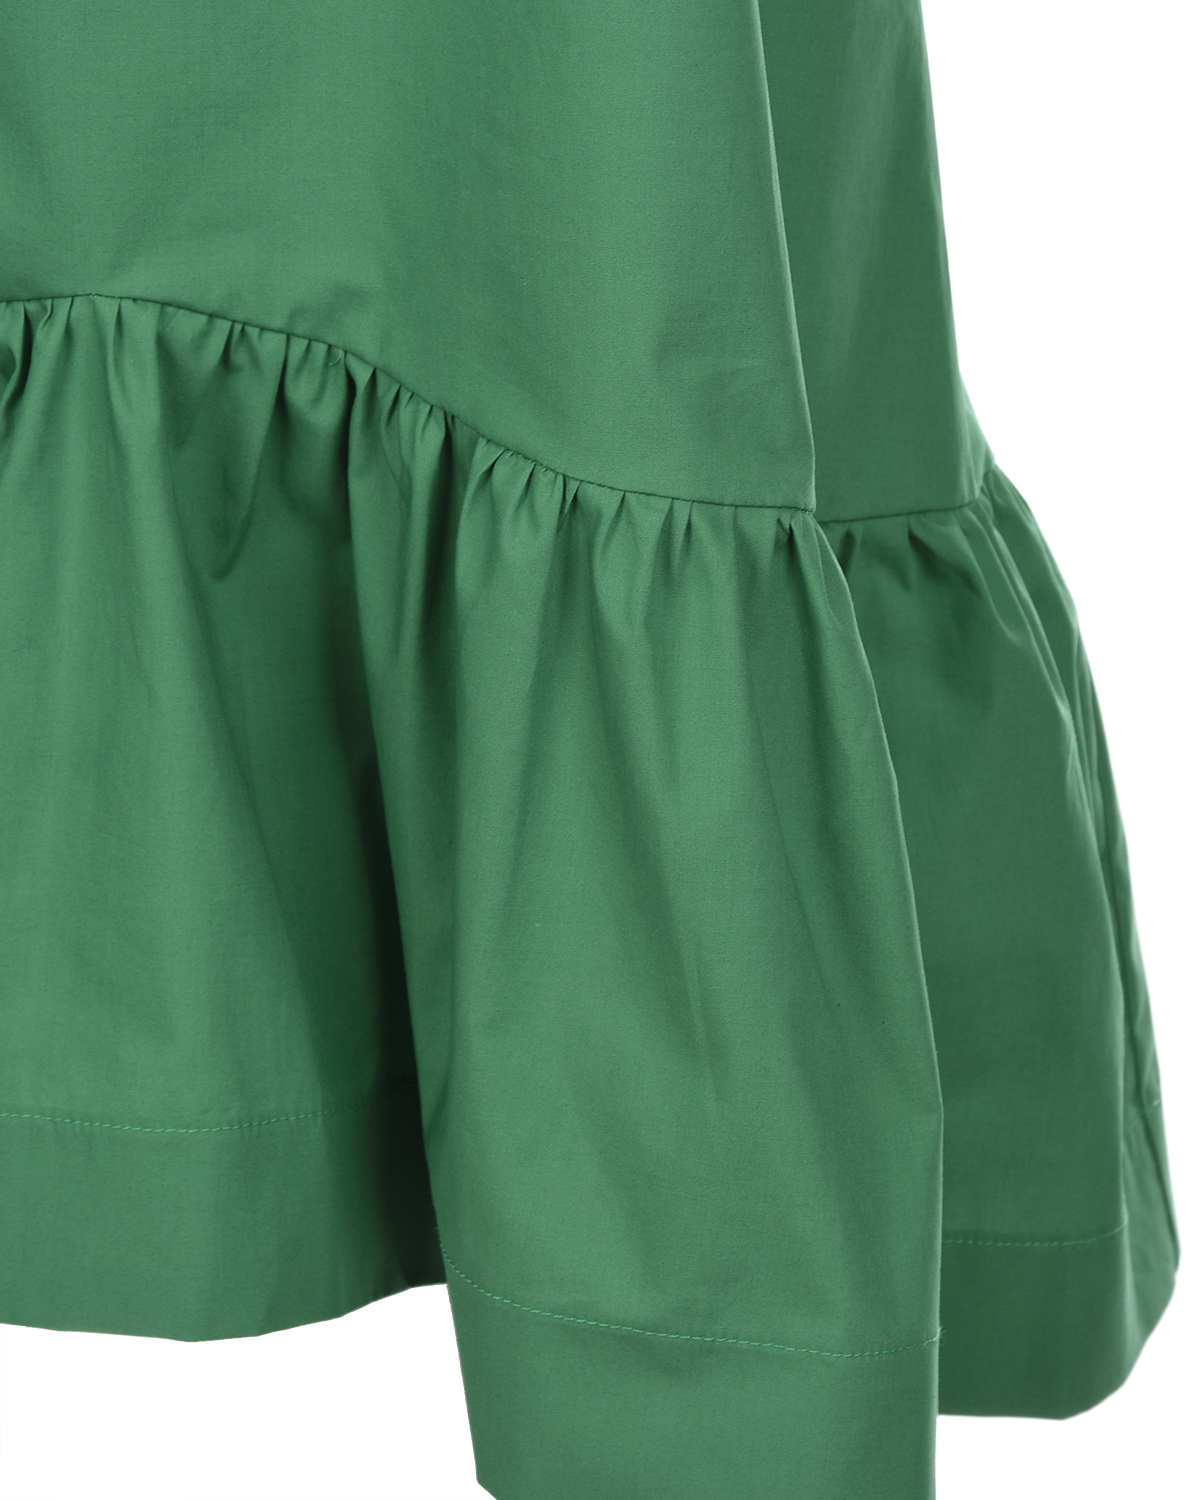 Зеленое платье с бантами на спинке Attesa, размер 40, цвет зеленый - фото 7